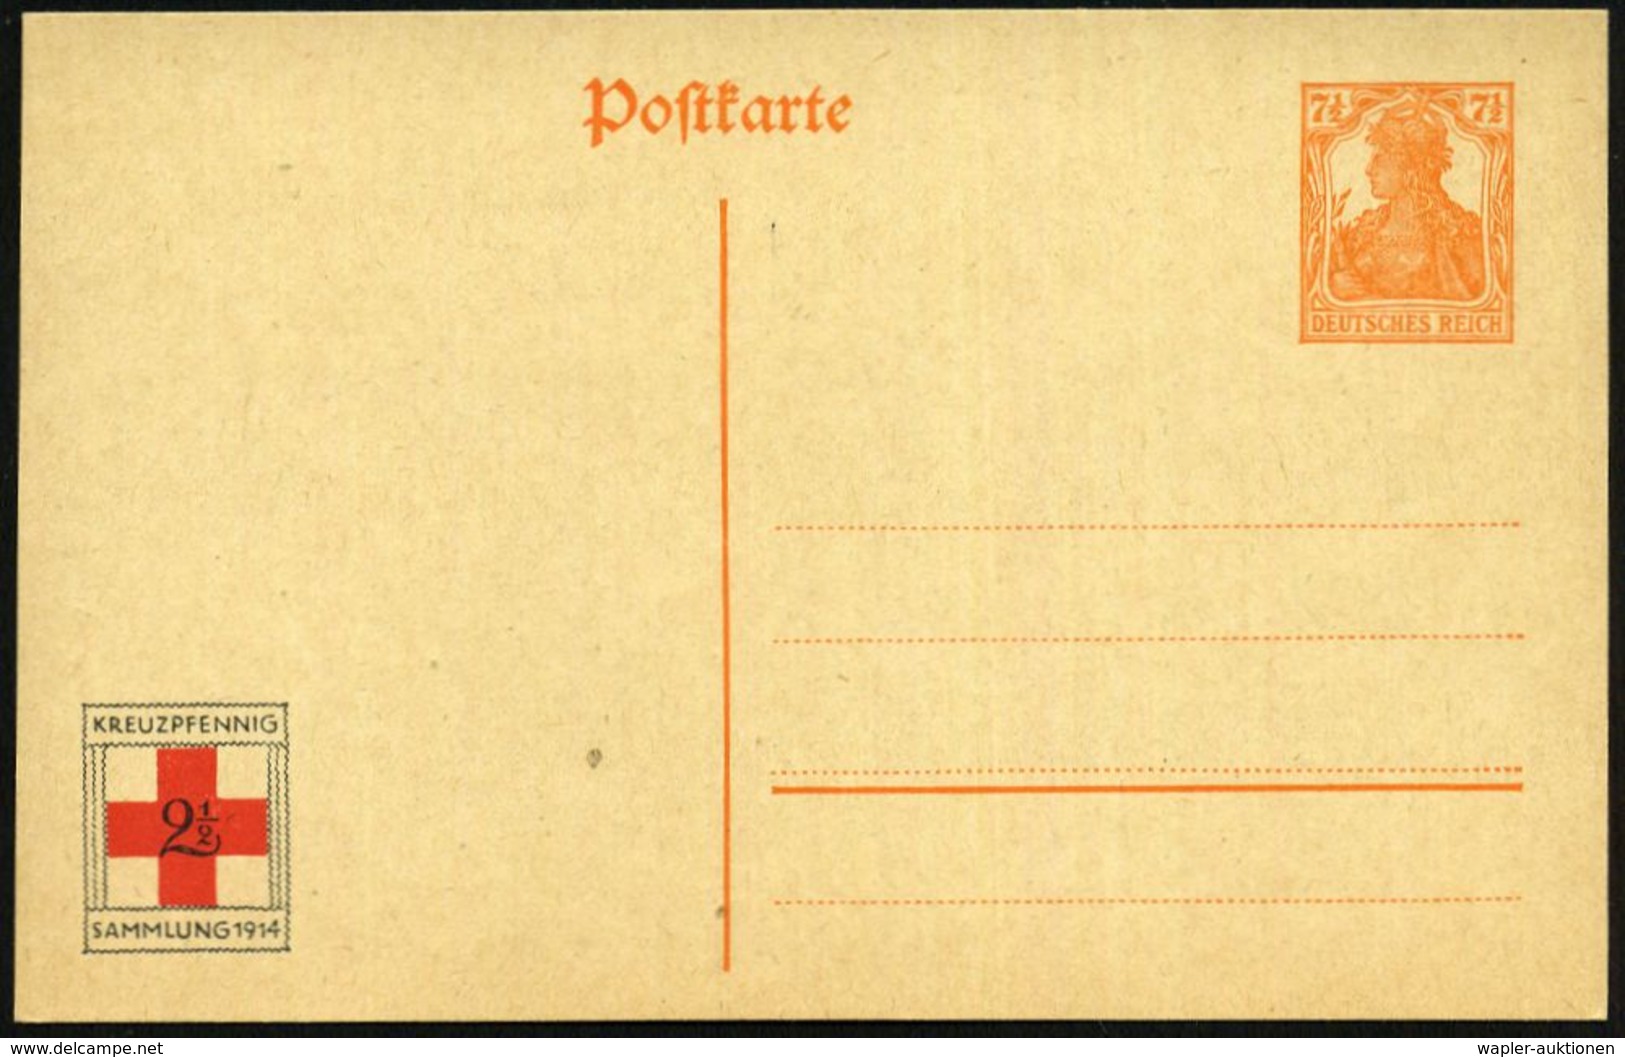 DEUTSCHES REICH 1916 Amtl. P 7 1/2 Pf. Germania + Amtl. Rotkreuz-Spenden-Zudruck: KREUZPFENNIG / SAMMLUNG 1914  2 1/2 Pf - Rotes Kreuz